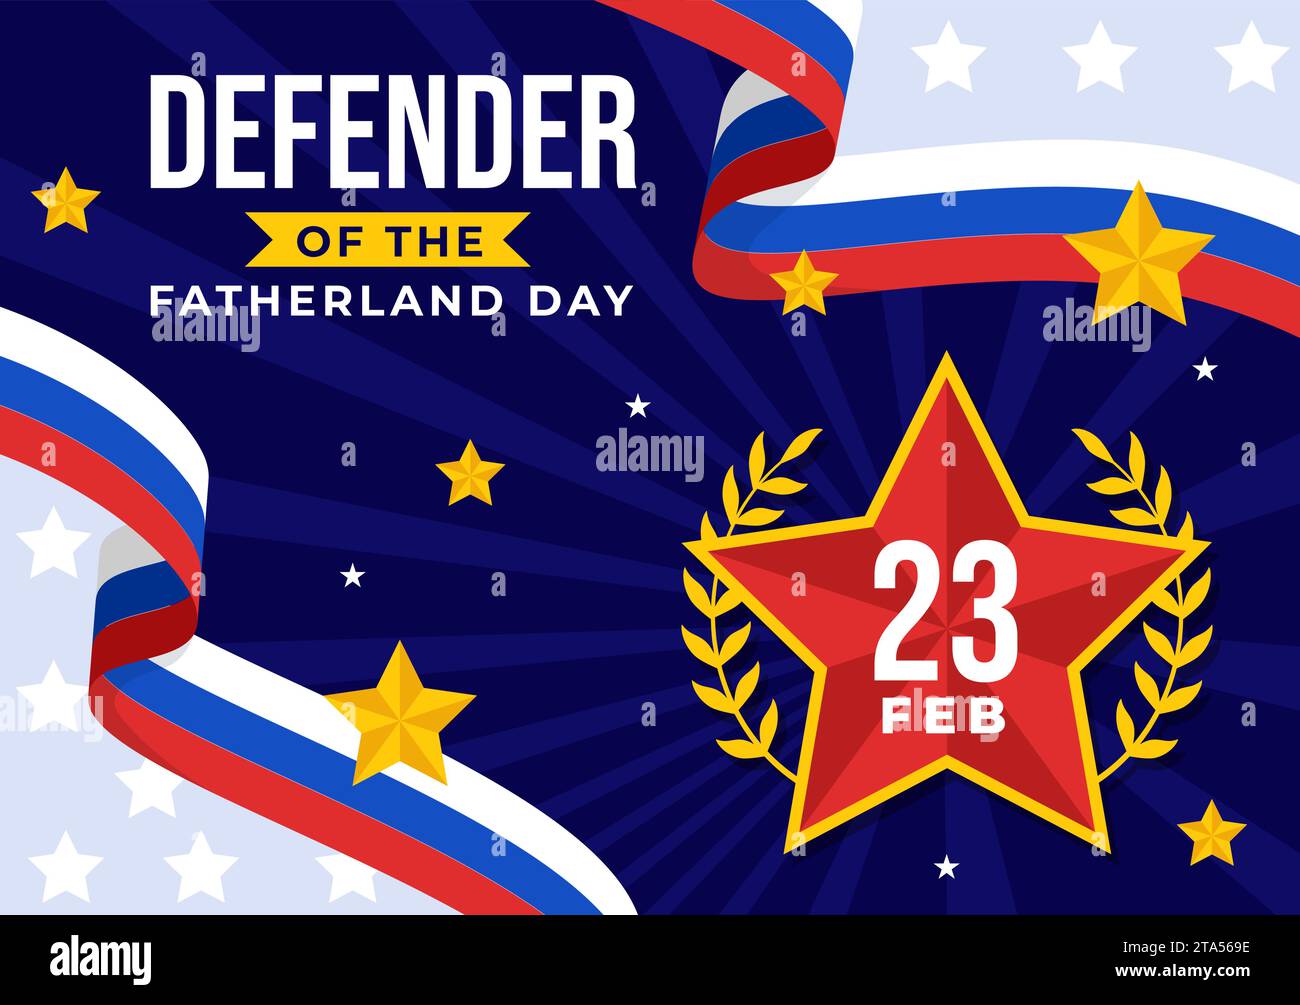 Vektor-Illustration des Vaterlandtags am 23. Februar mit russischer Flagge und Stern im Nationalfeiertag Russlands flacher Zeichentrickhintergrund Stock Vektor